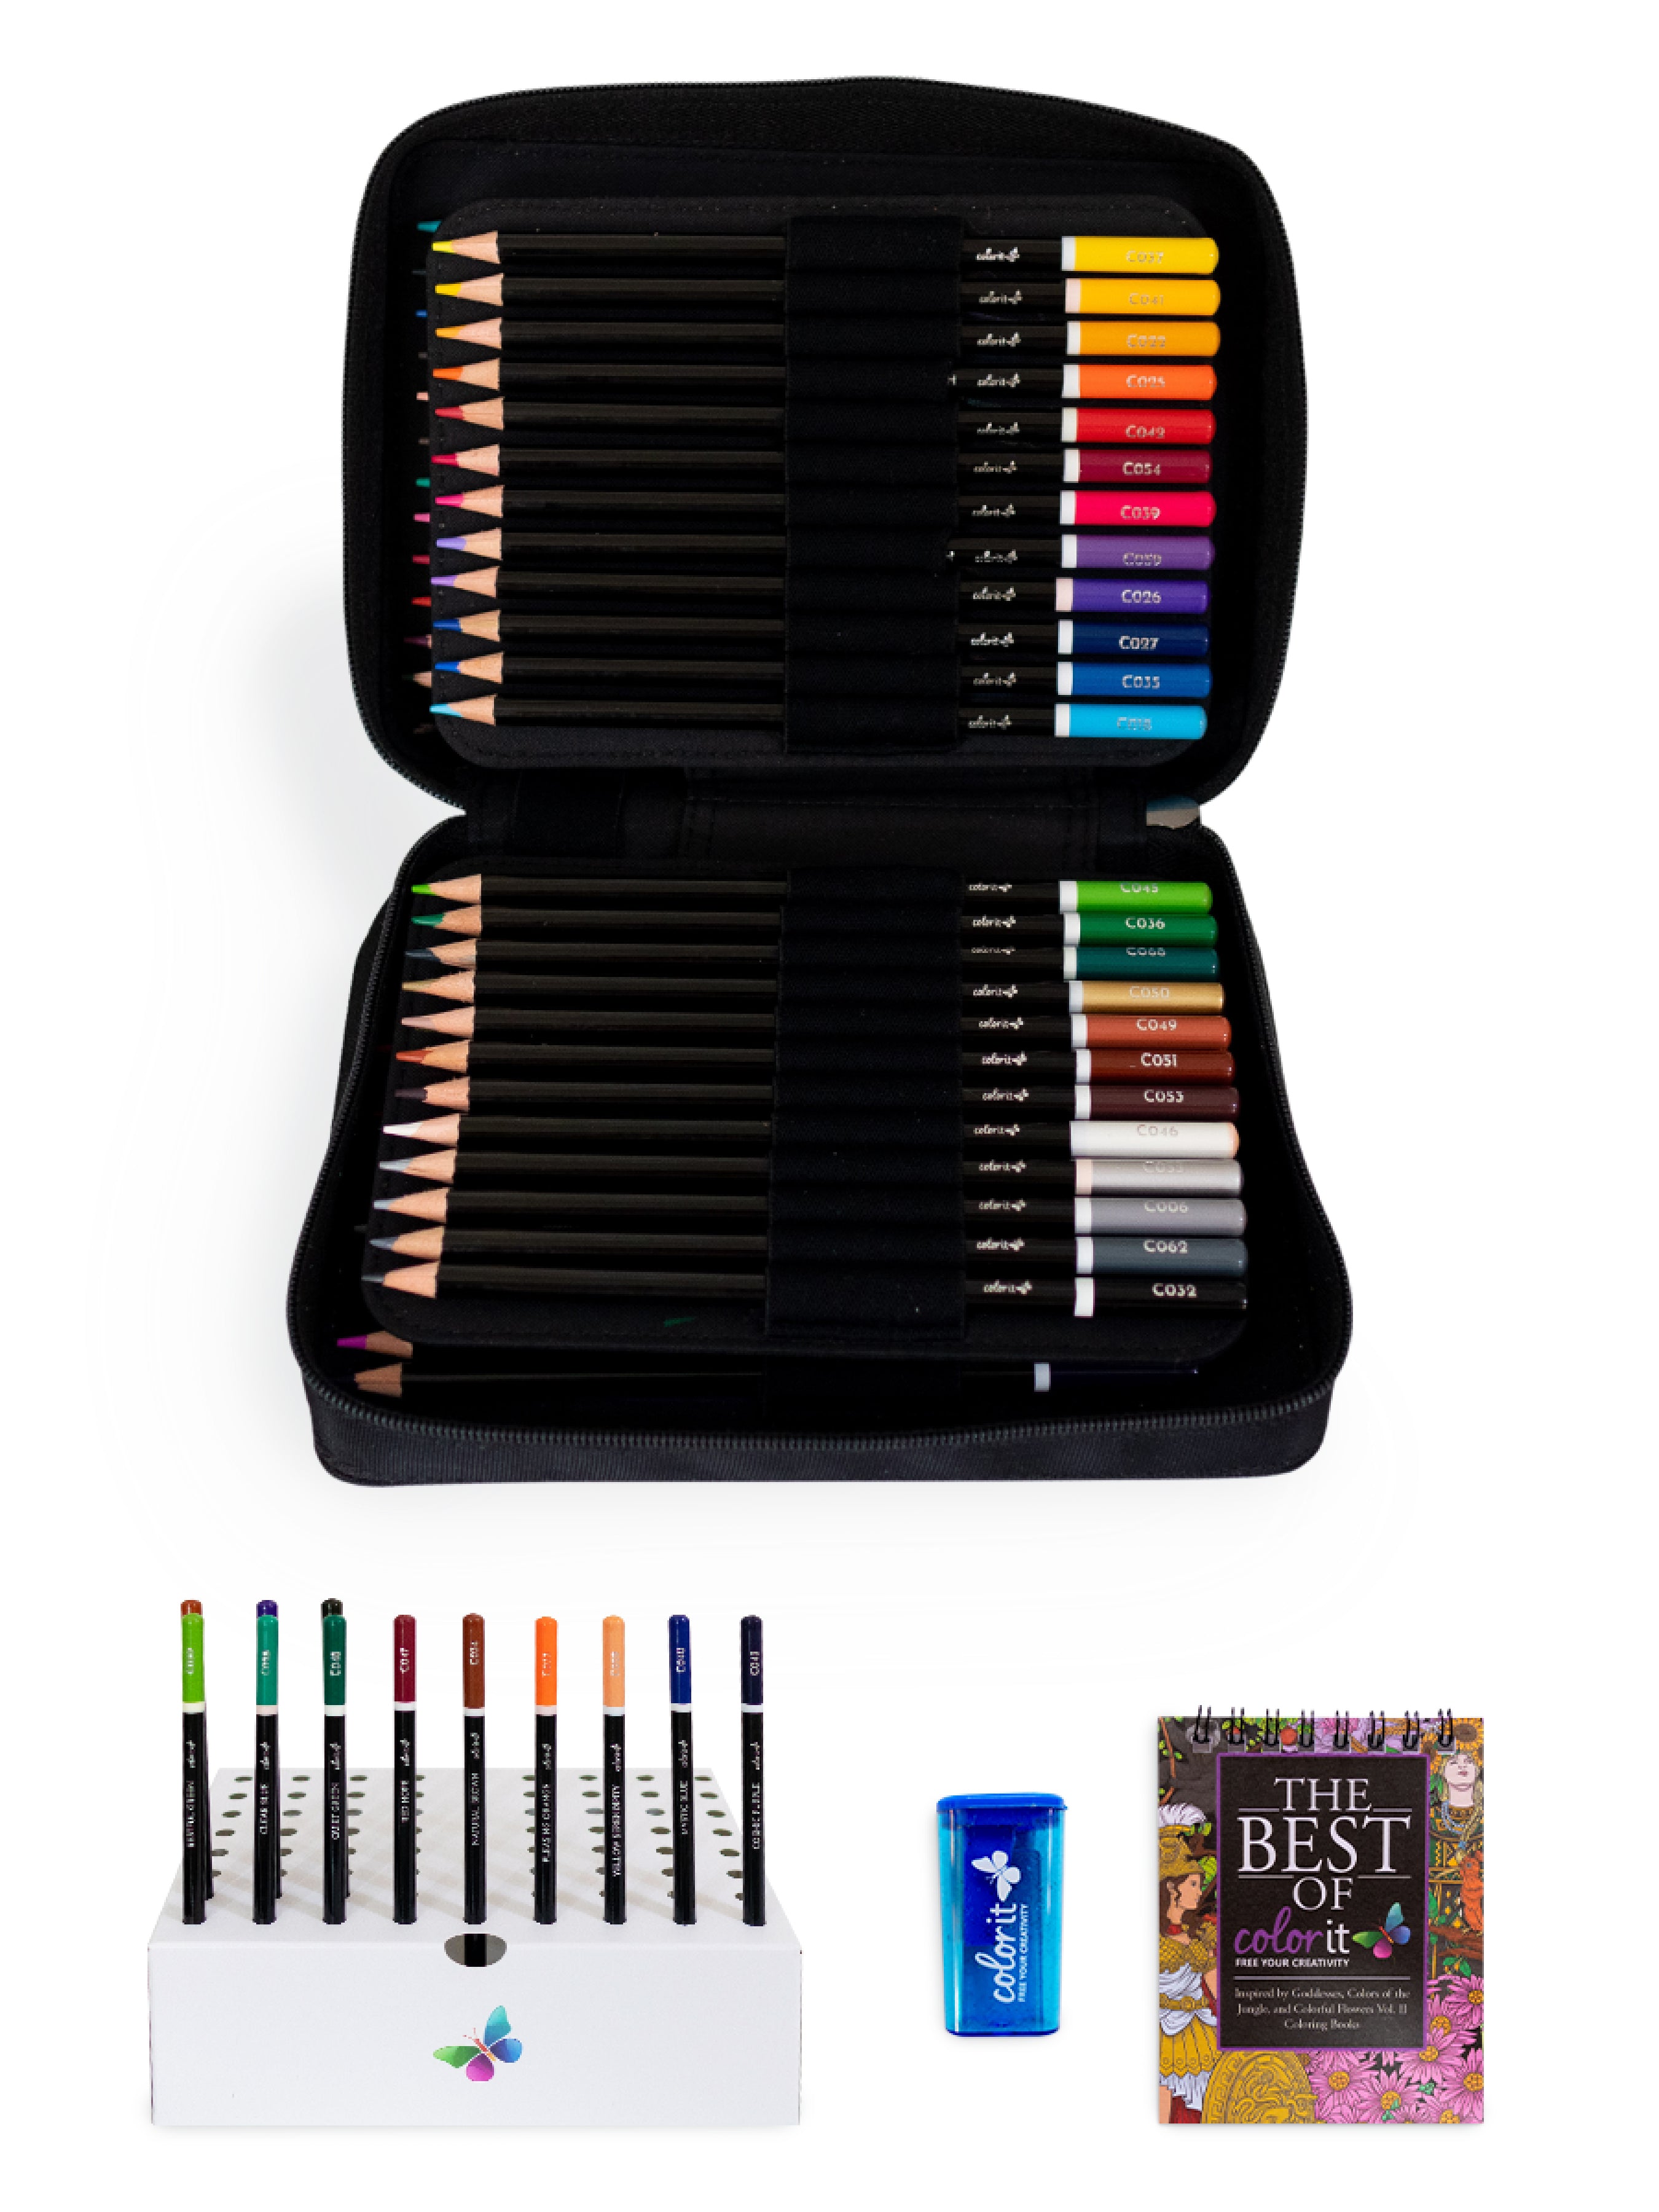 Premium 72 Colored Pencil Set - Includes Pencil Organizer, Travel Case,  Pencil Sharpener, Mini Coloring Book, and Gift Box